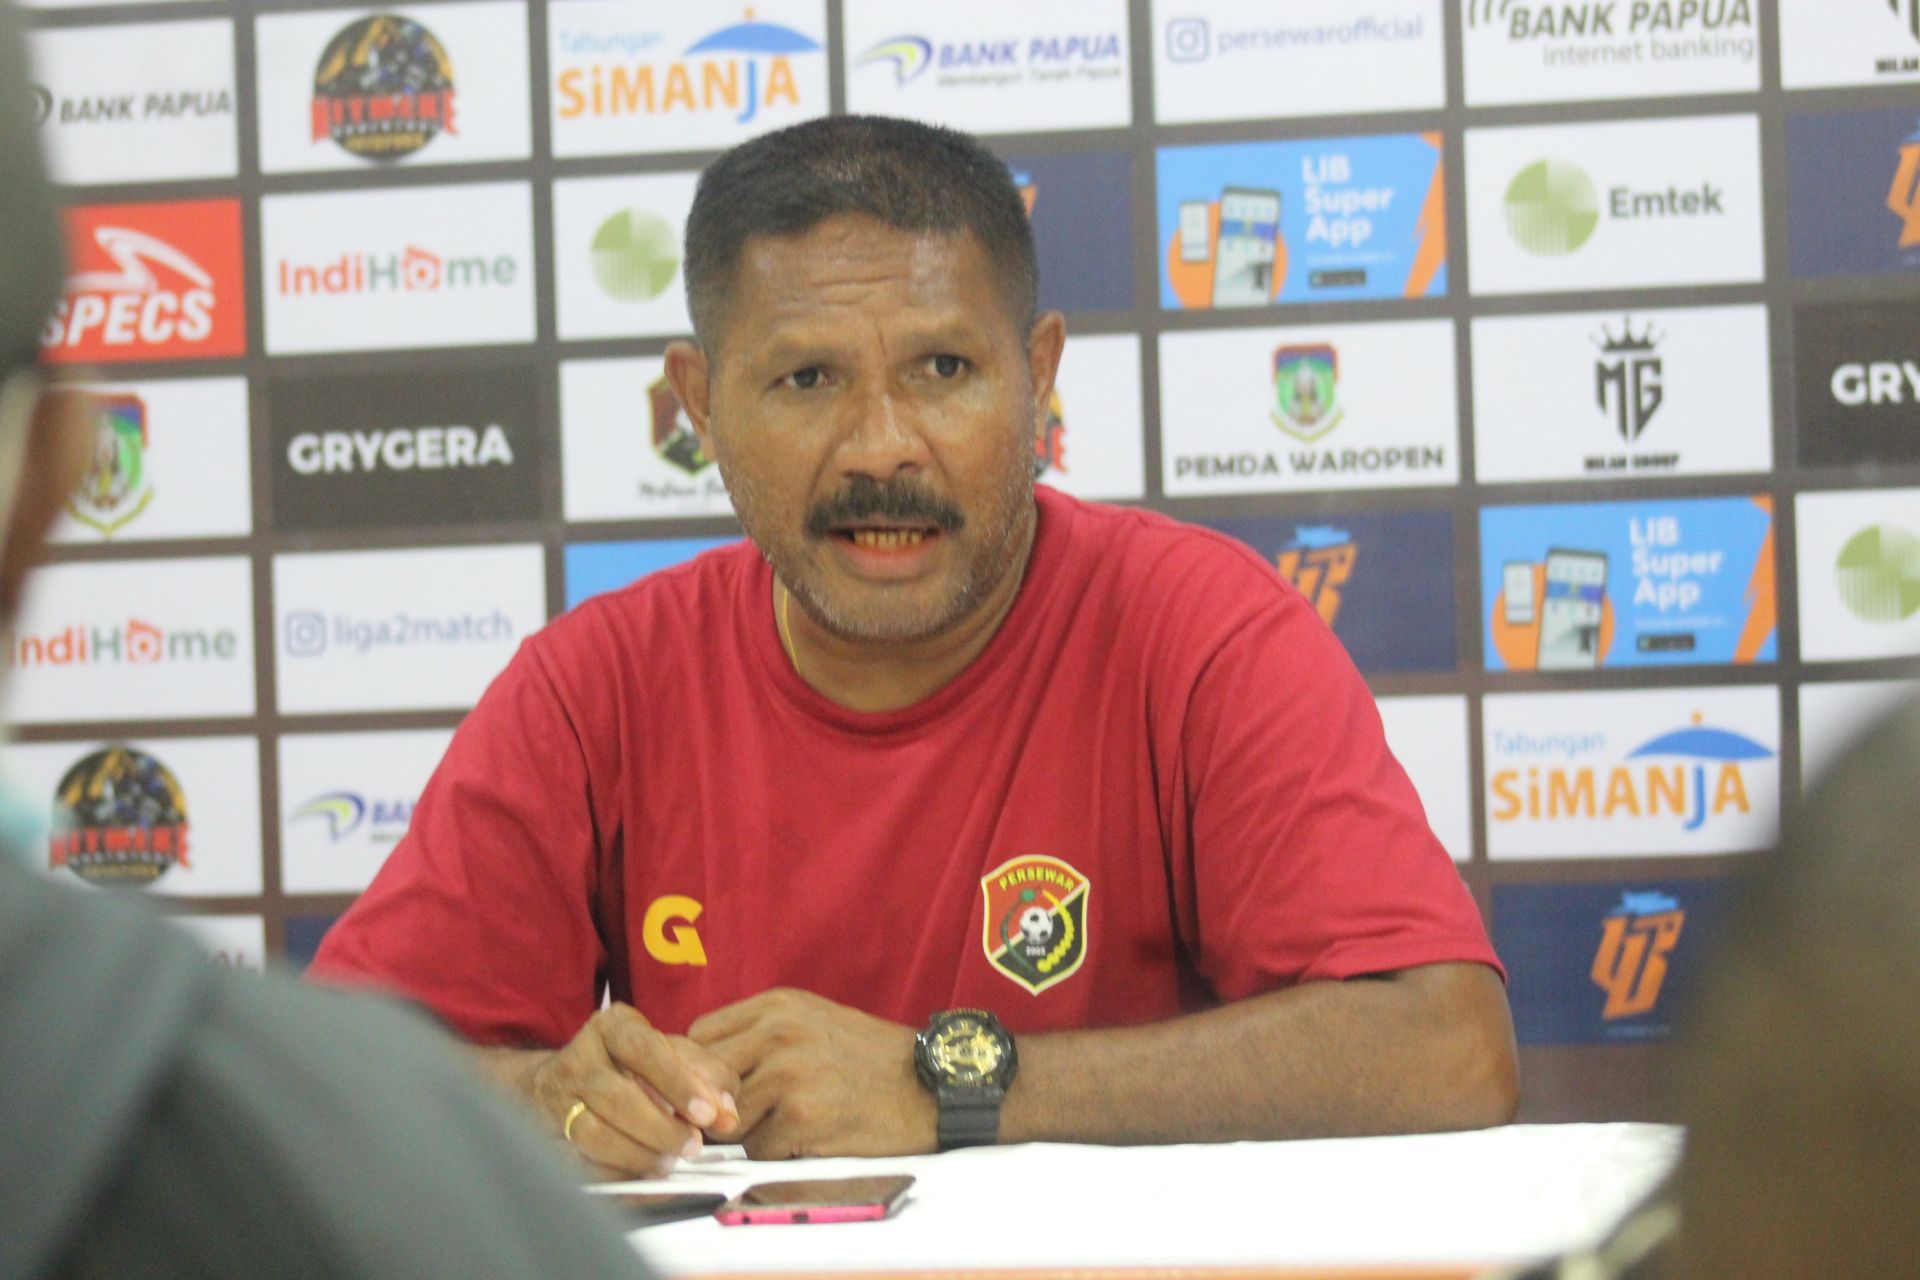 Keterangan pers pelatih Persewar Waropen, Eduard Ivakdalam usai pertandingan di Stadion Mandala, Kota Jayapura, Papua dok (PORTAL PAPUA)